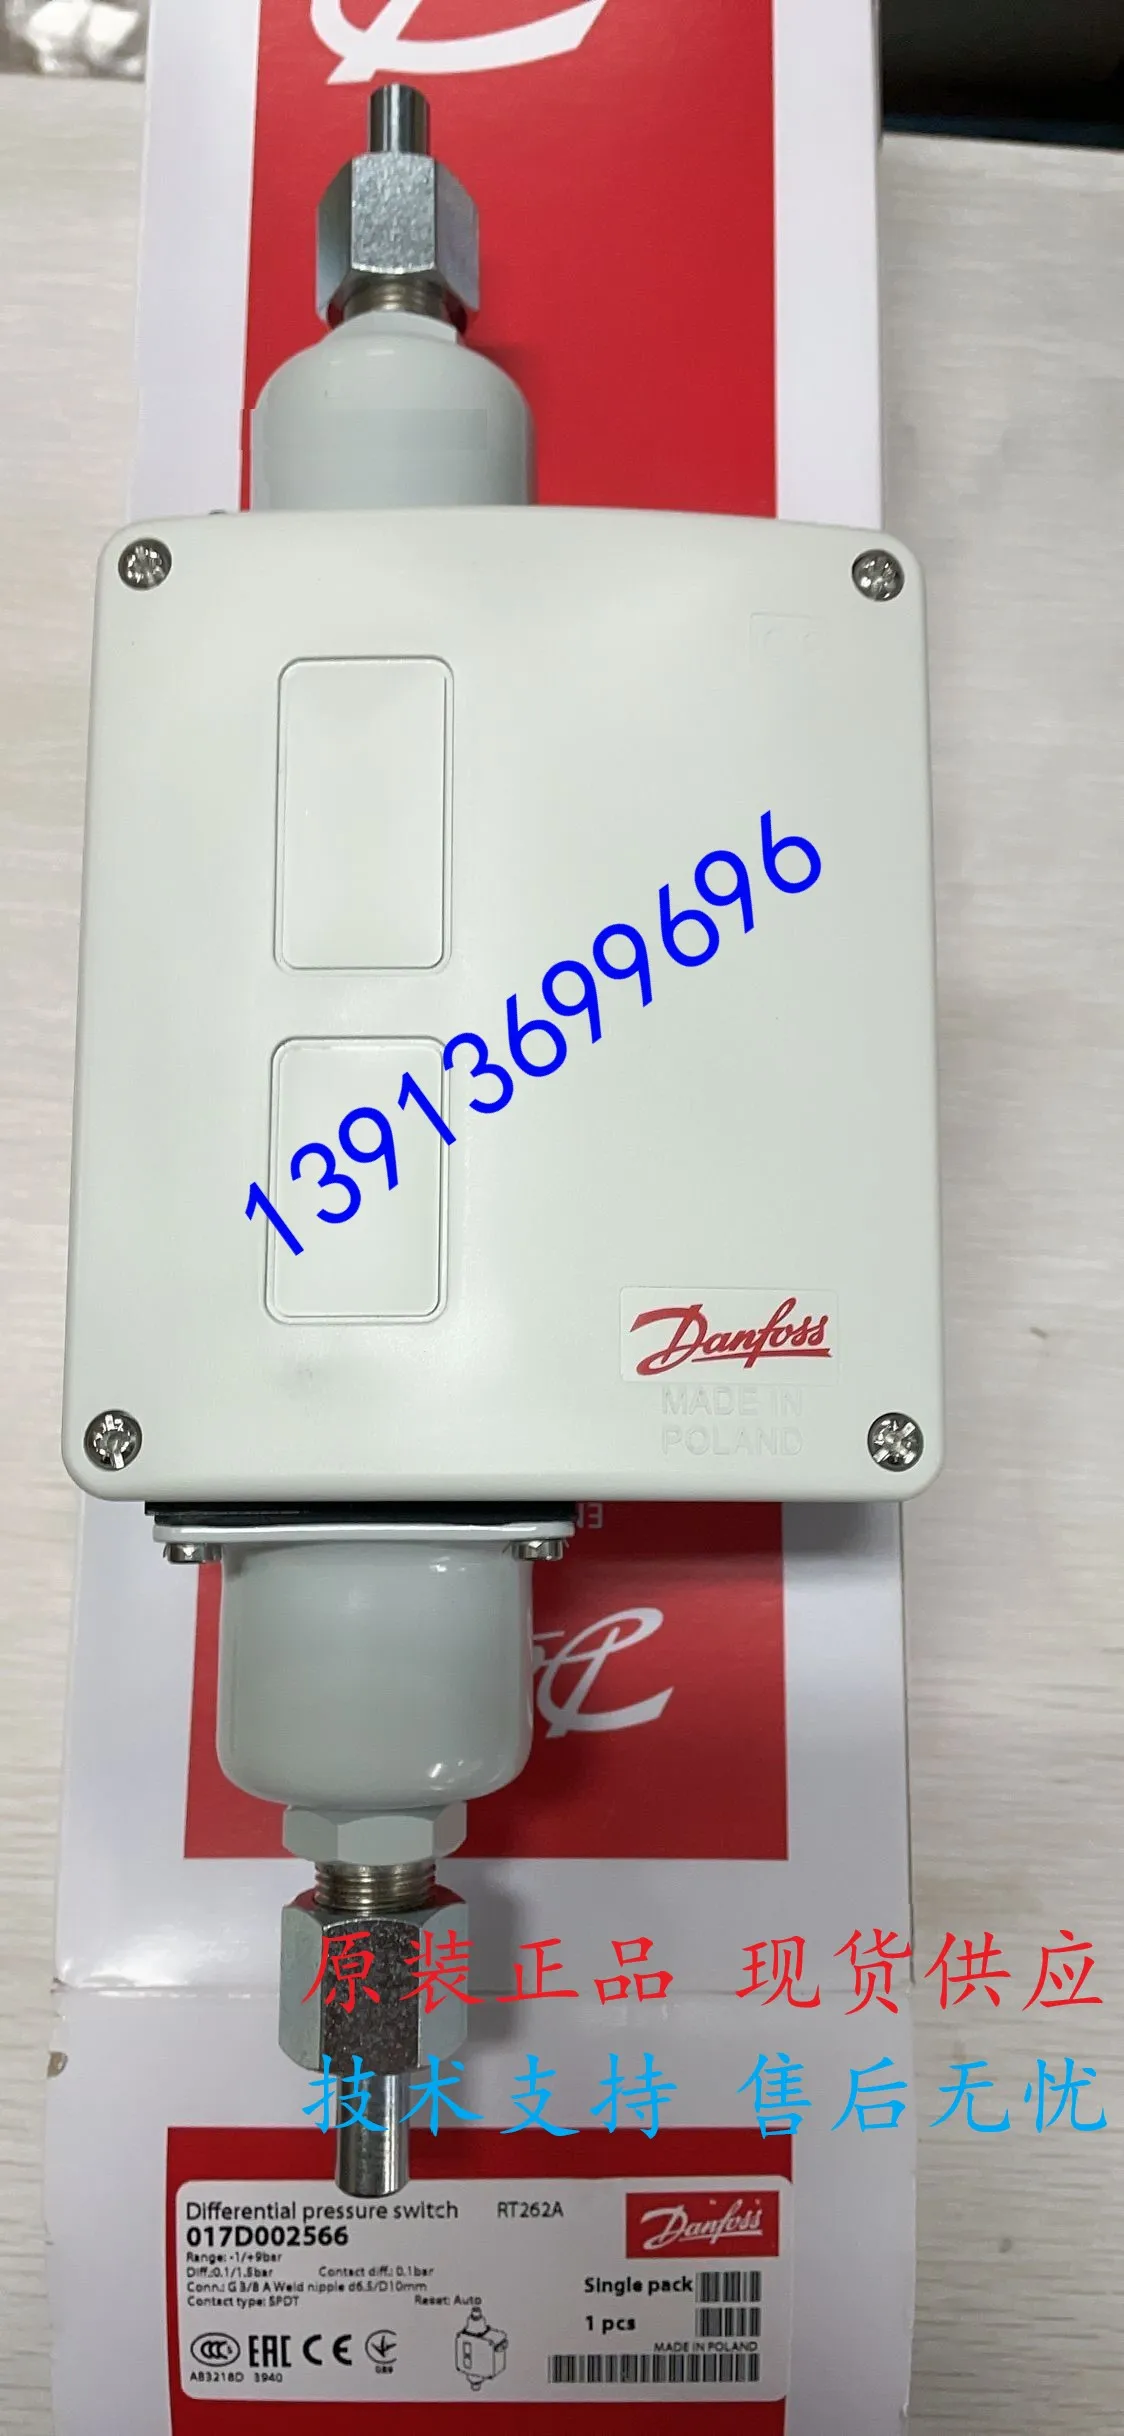 

Danfoss Pressure Switch RT260A 017D002166/002366/002466 Original Direct Sales